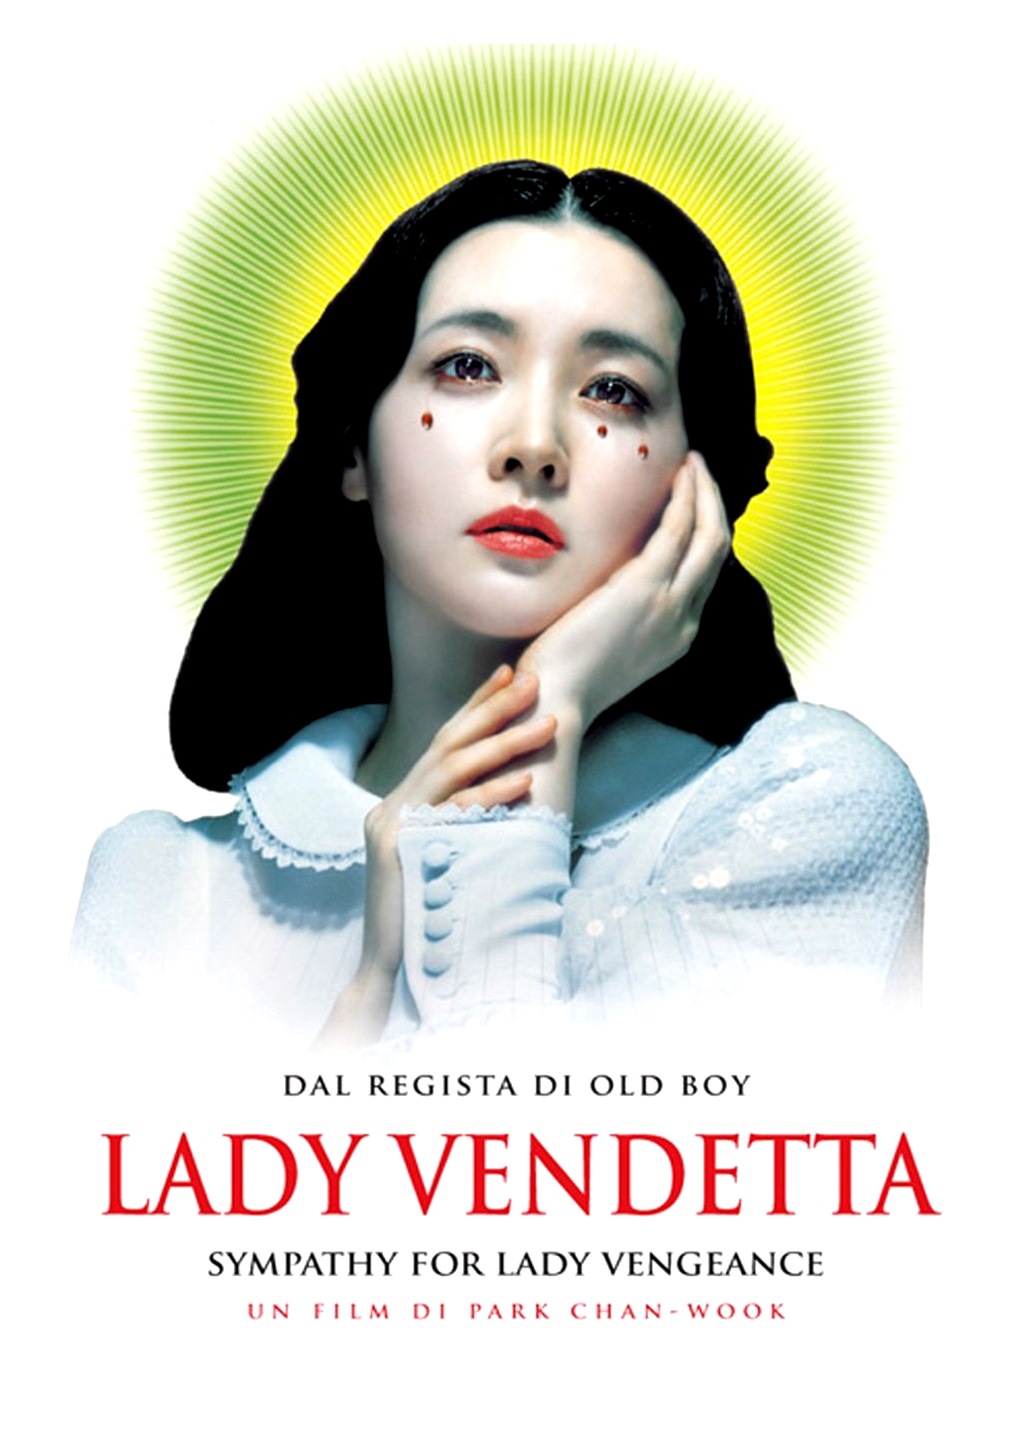 Lady vendetta [HD] (2005)